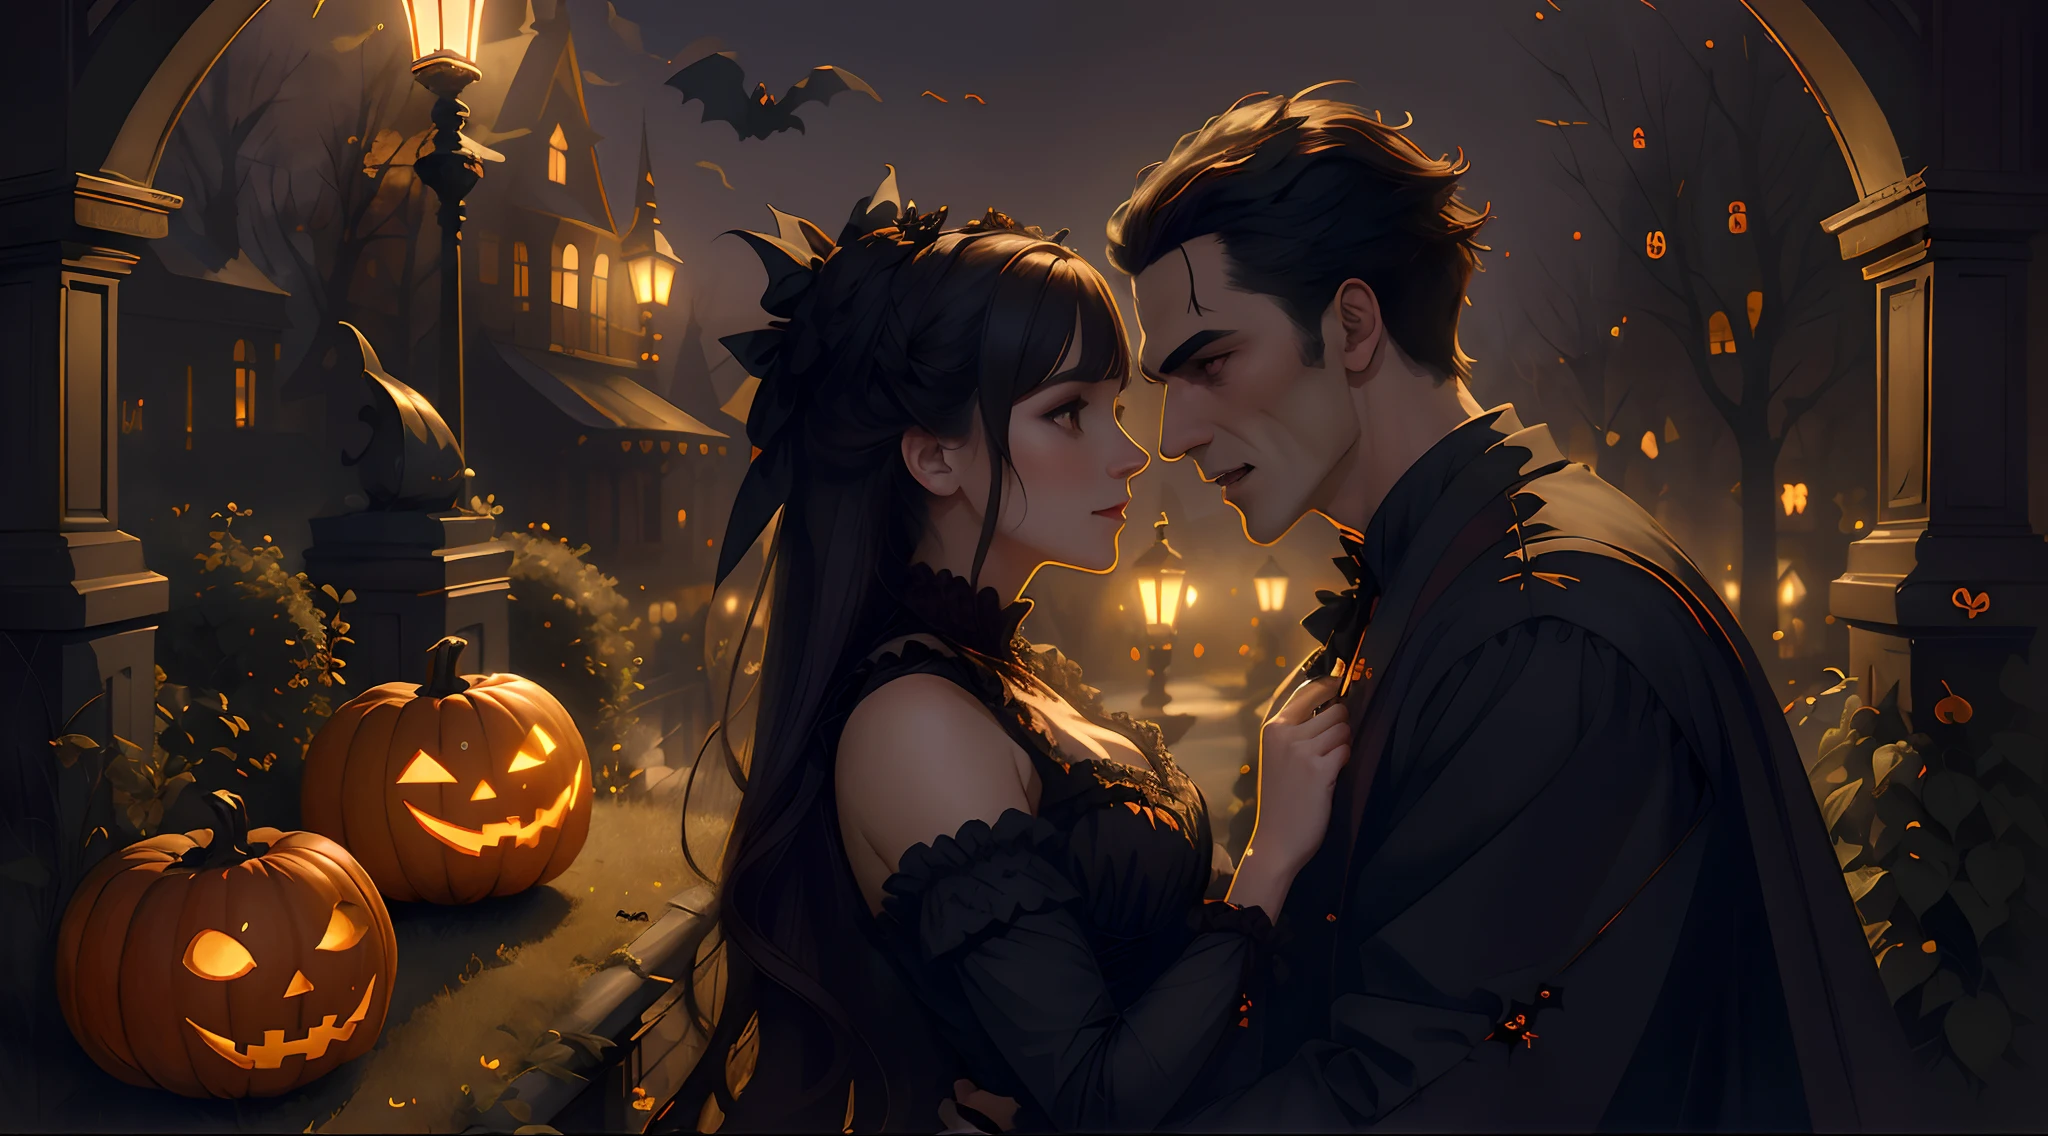 (chef-d&#39;œuvre), (((la plus haute qualité)), (très détaillé), créer une jolie illustration d’Halloween de deux vampires amoureux, oeuvre épique, Éclairage élevé, Néo Victorien, aura magique